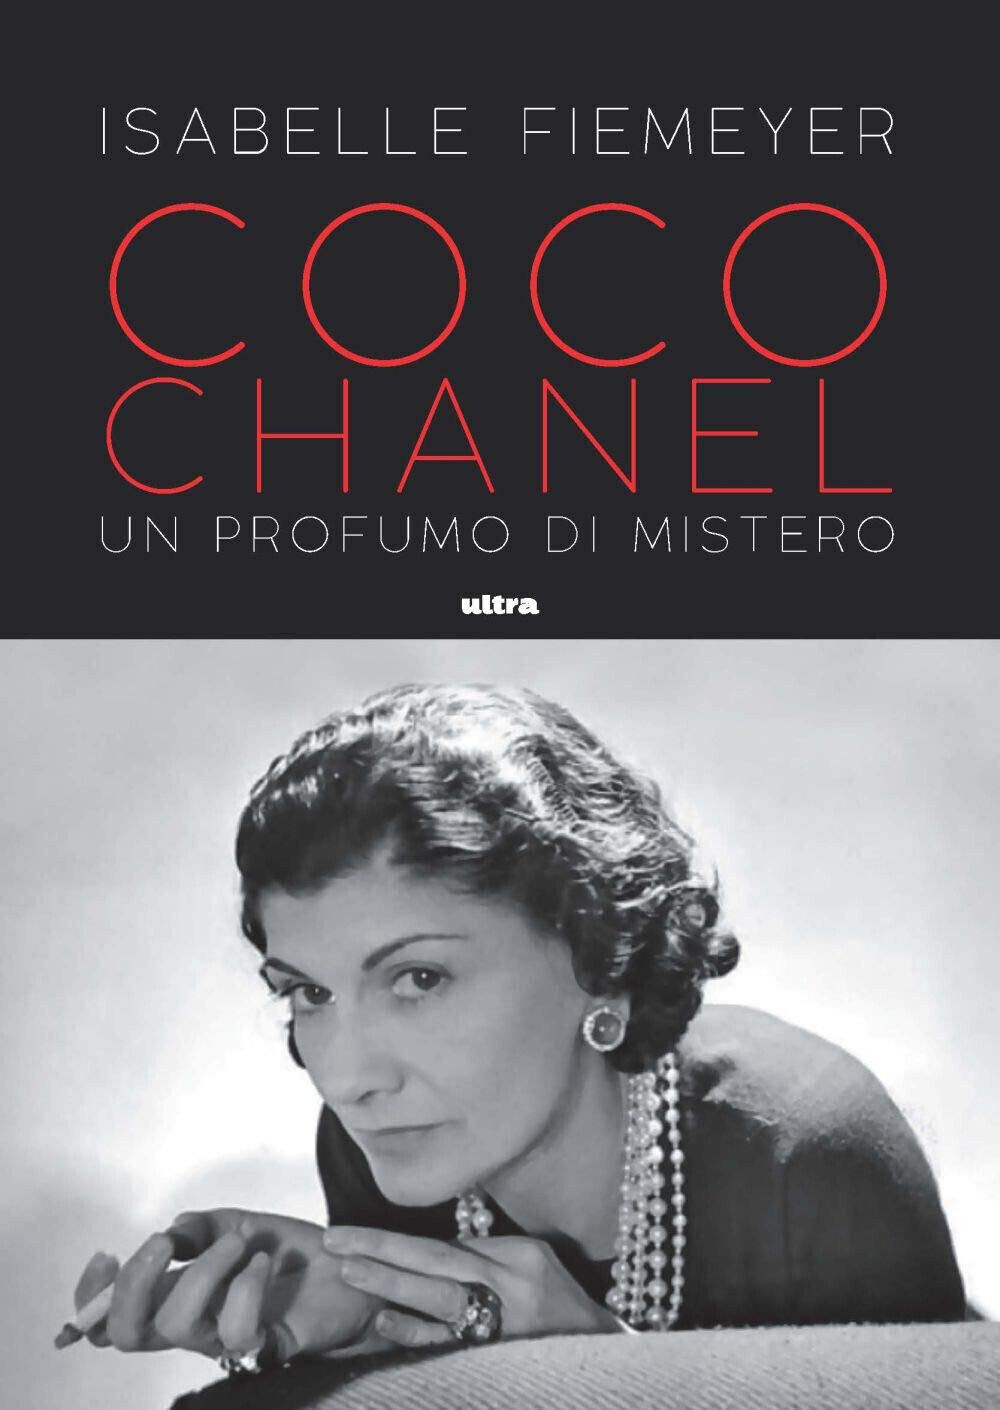 Coco Chanel. Un profumo di mistero - Isabelle Fiemeyer - Ultra, 2021